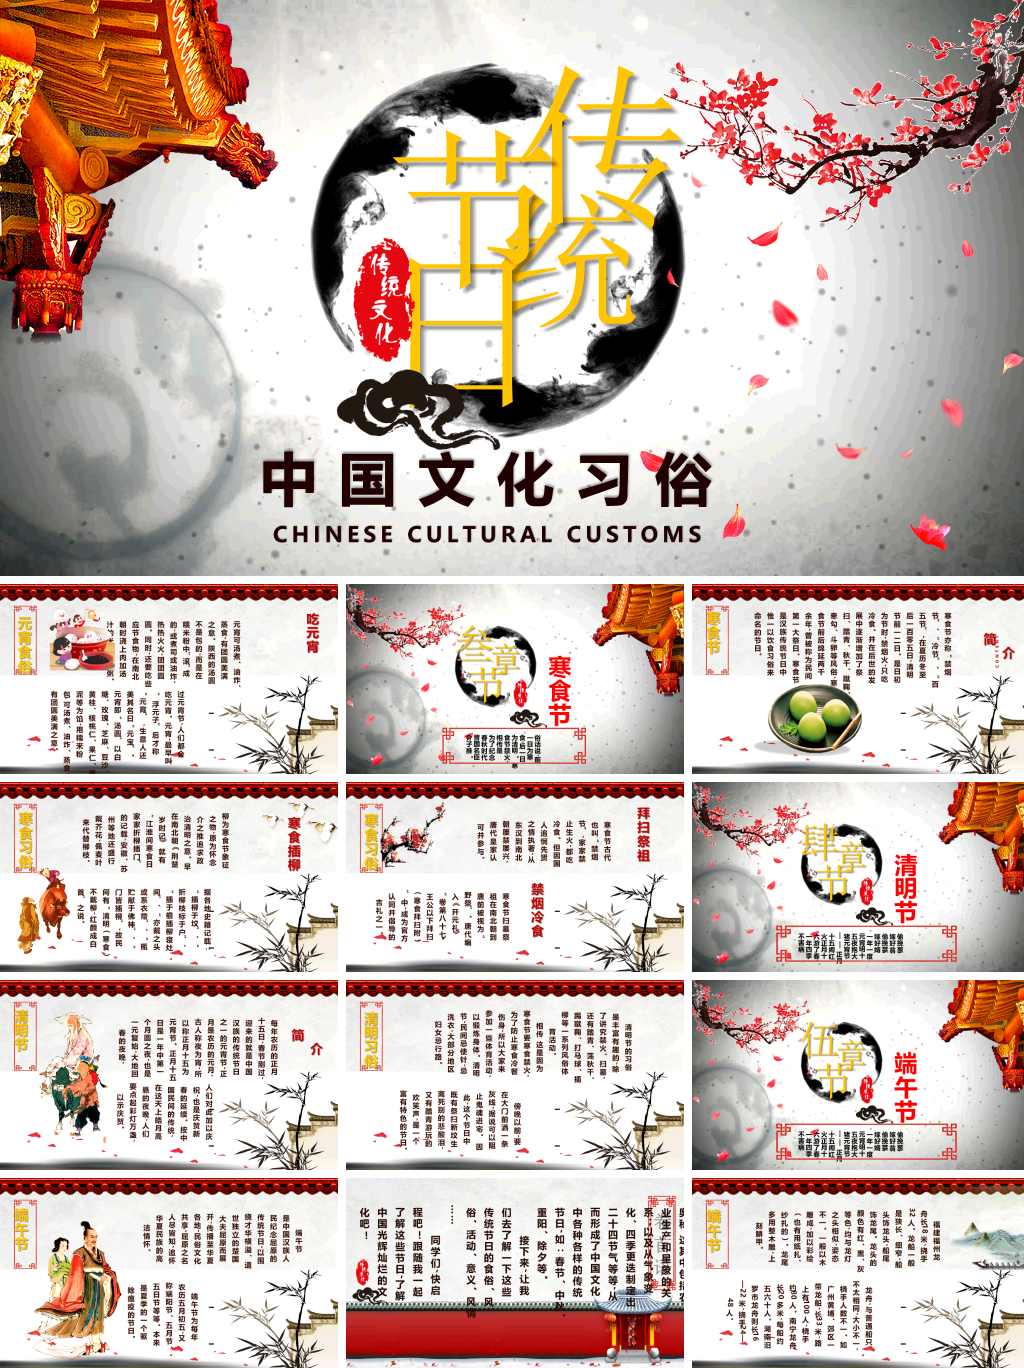 古典水墨风格传统节日文化习俗介绍PPT